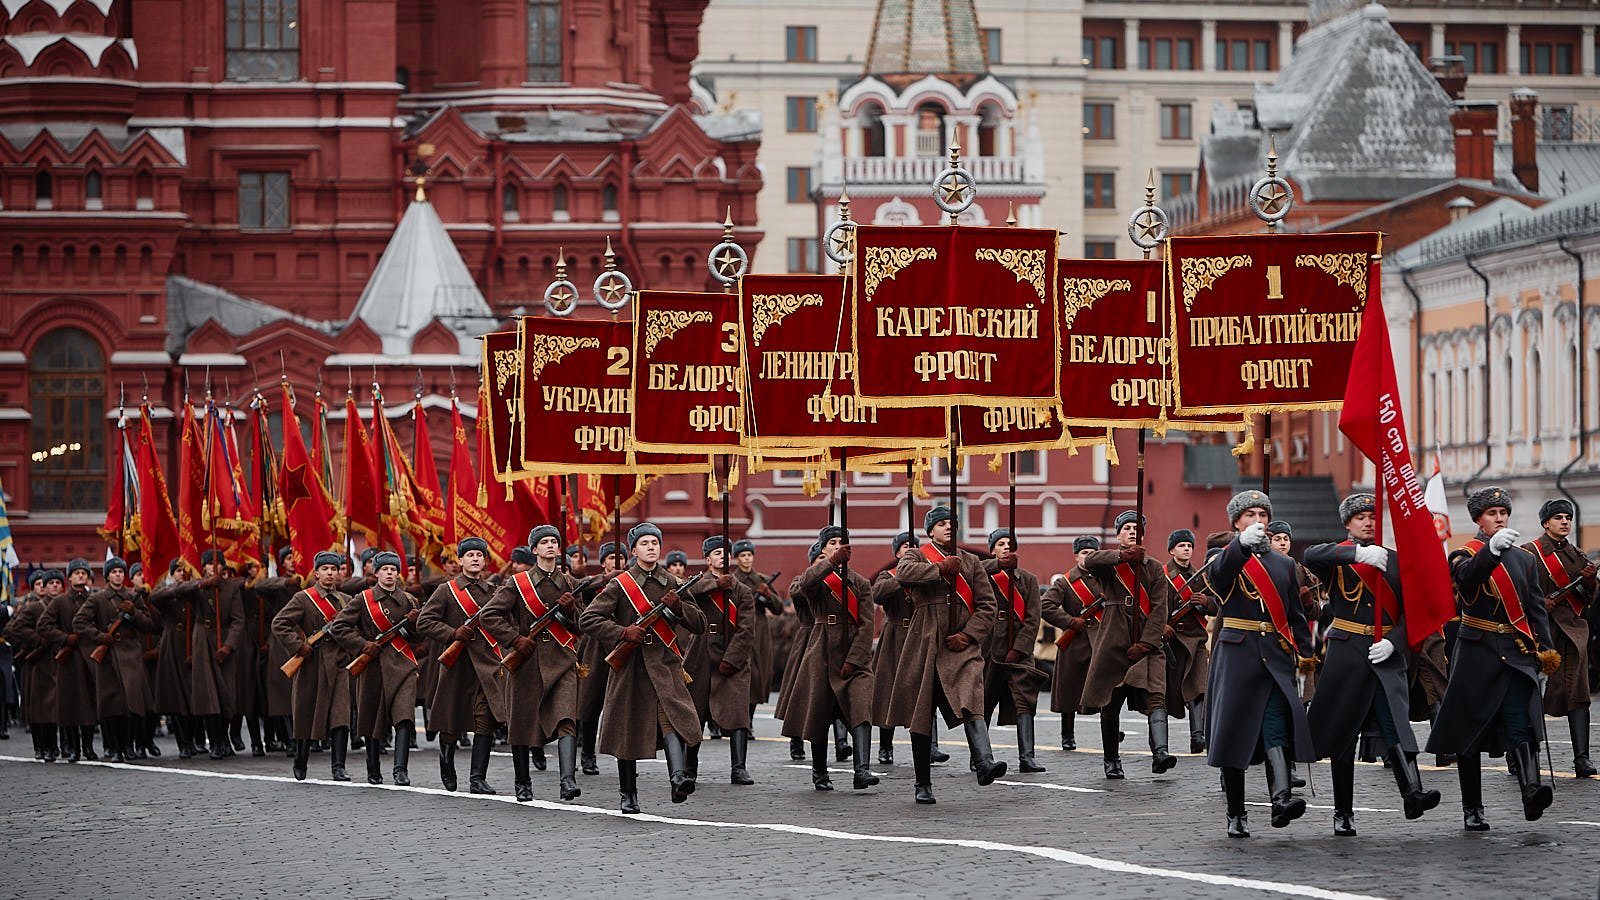 Фронт 1 мая. 24 Июня парад Победы в Москве 1945. Парад Победы на красной площади 1945. Парад 24 июня 1945 года в Москве на красной площади. Знамя Победы на параде Победы 1945 года.